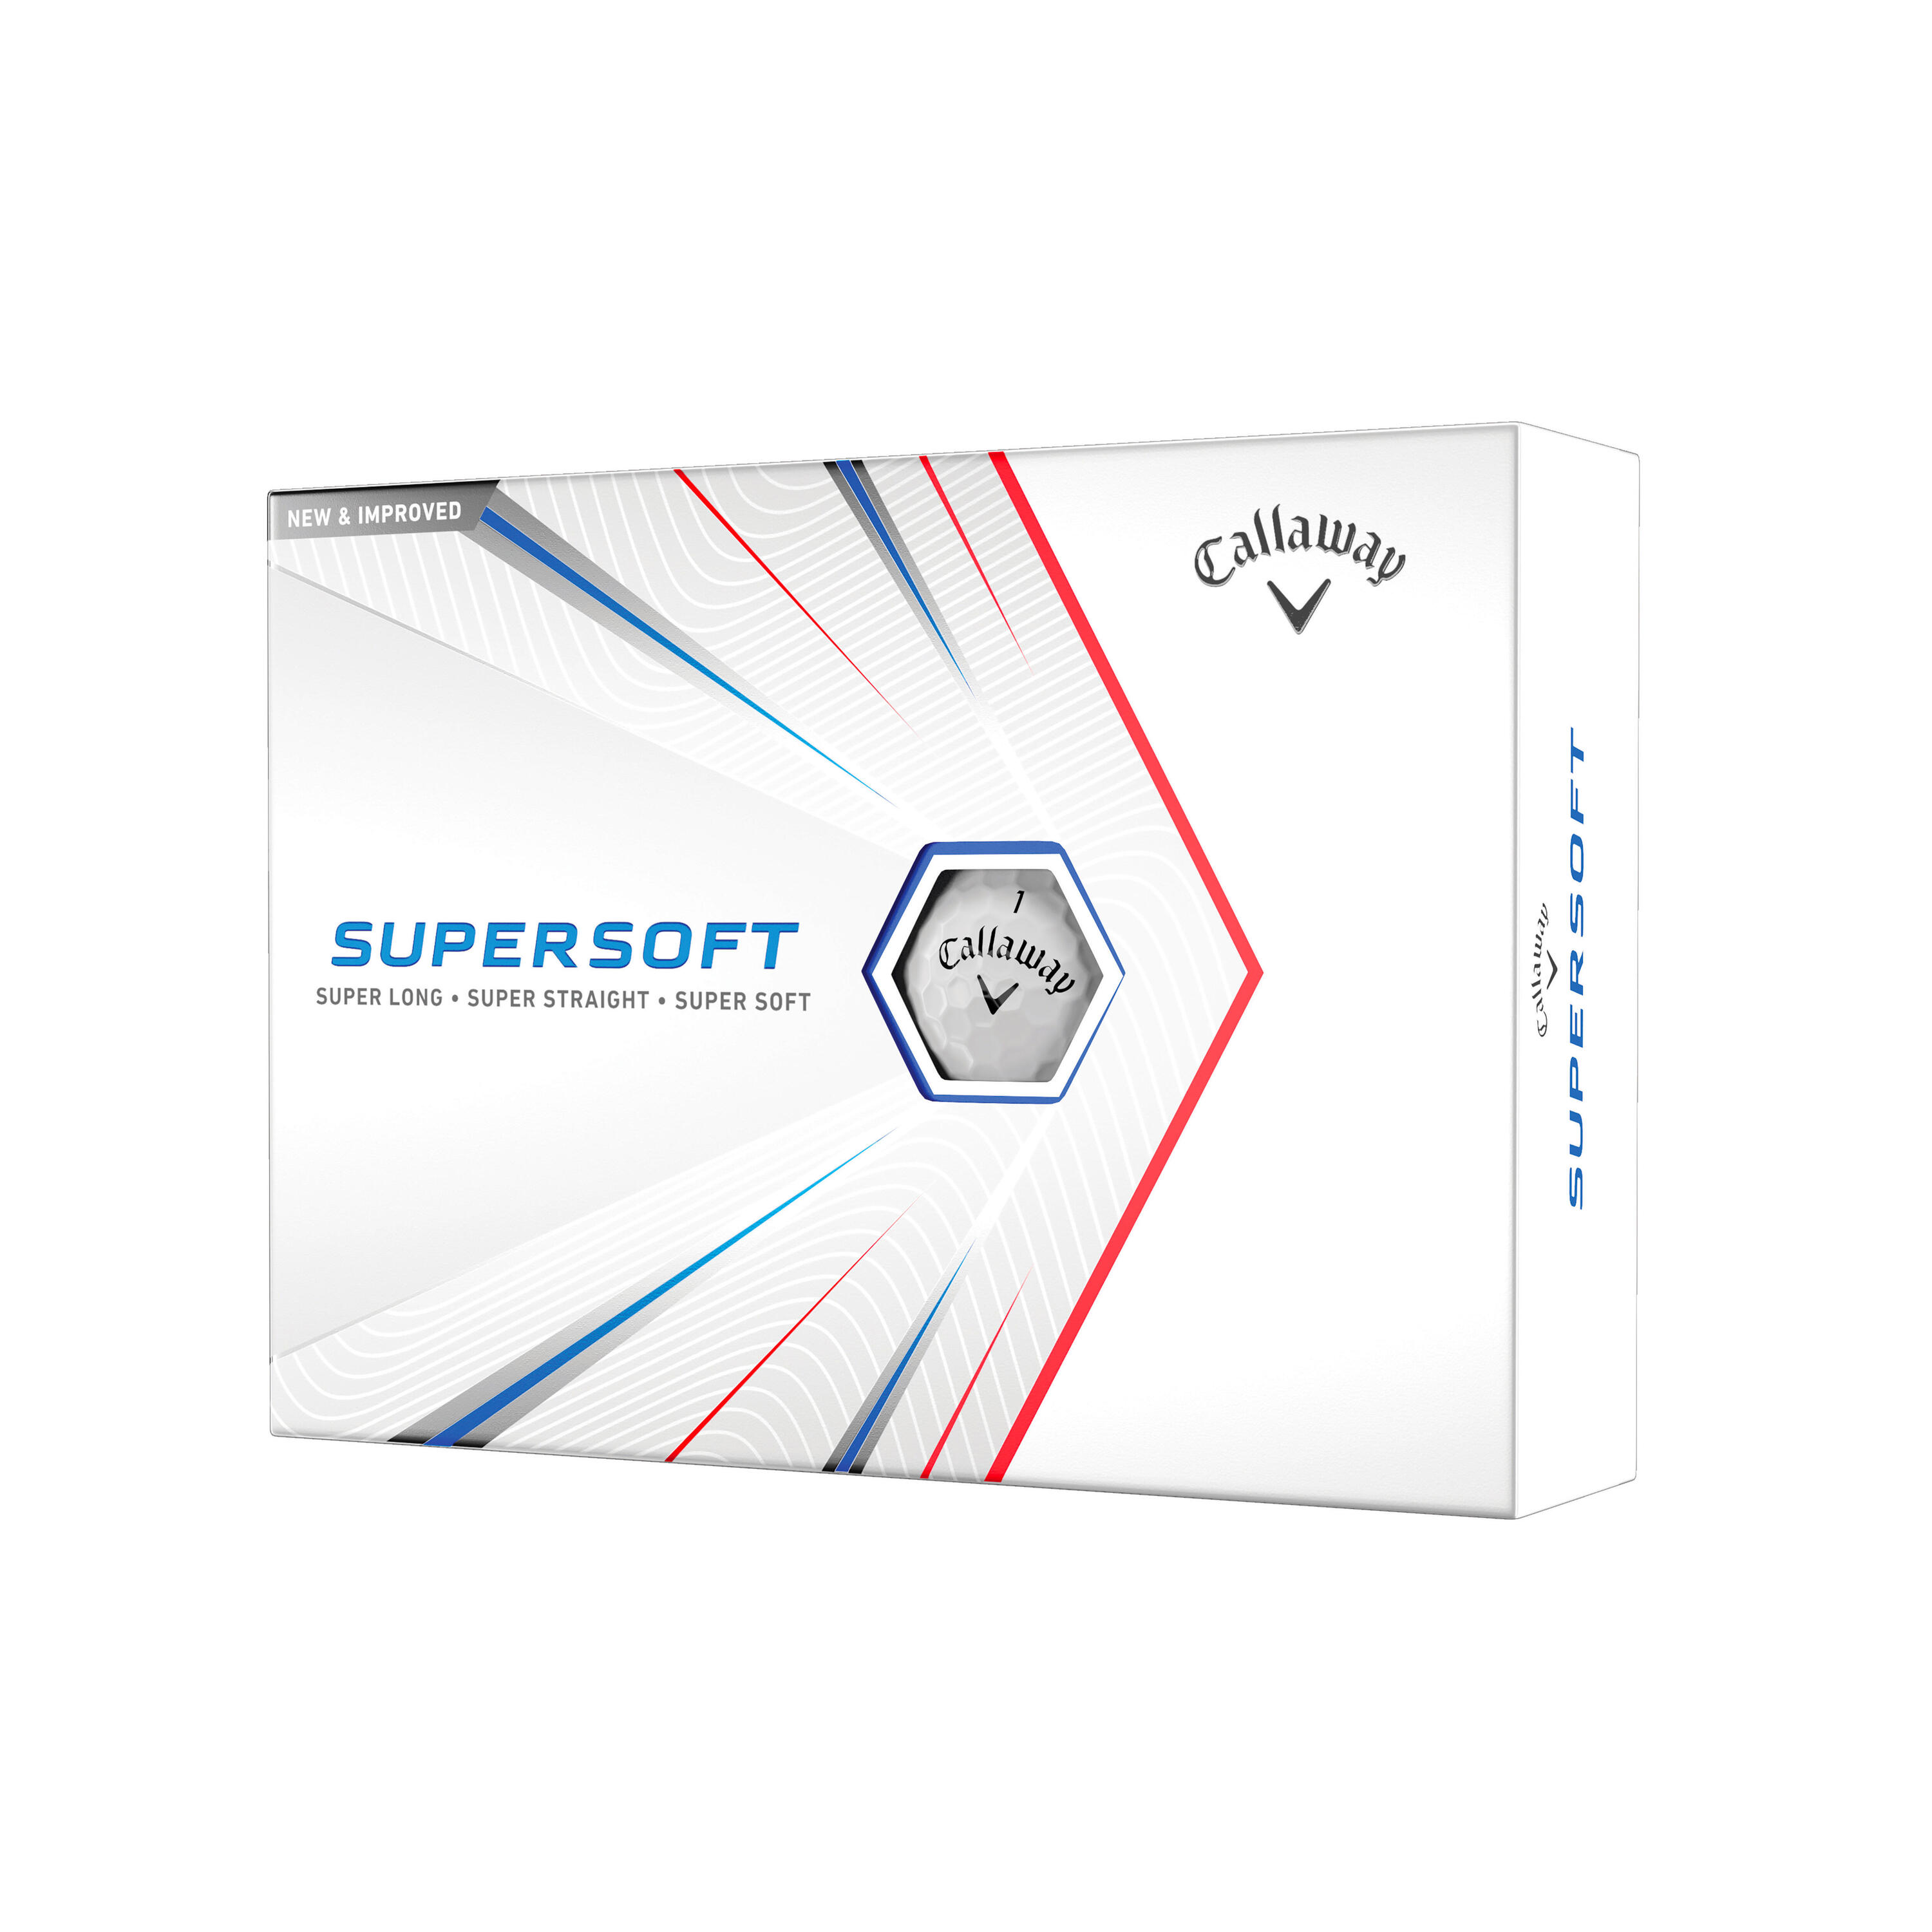 гольф мяч led подсветка Мячи для гольфа Supersoft 12 штук белые CALLAWAY, белый